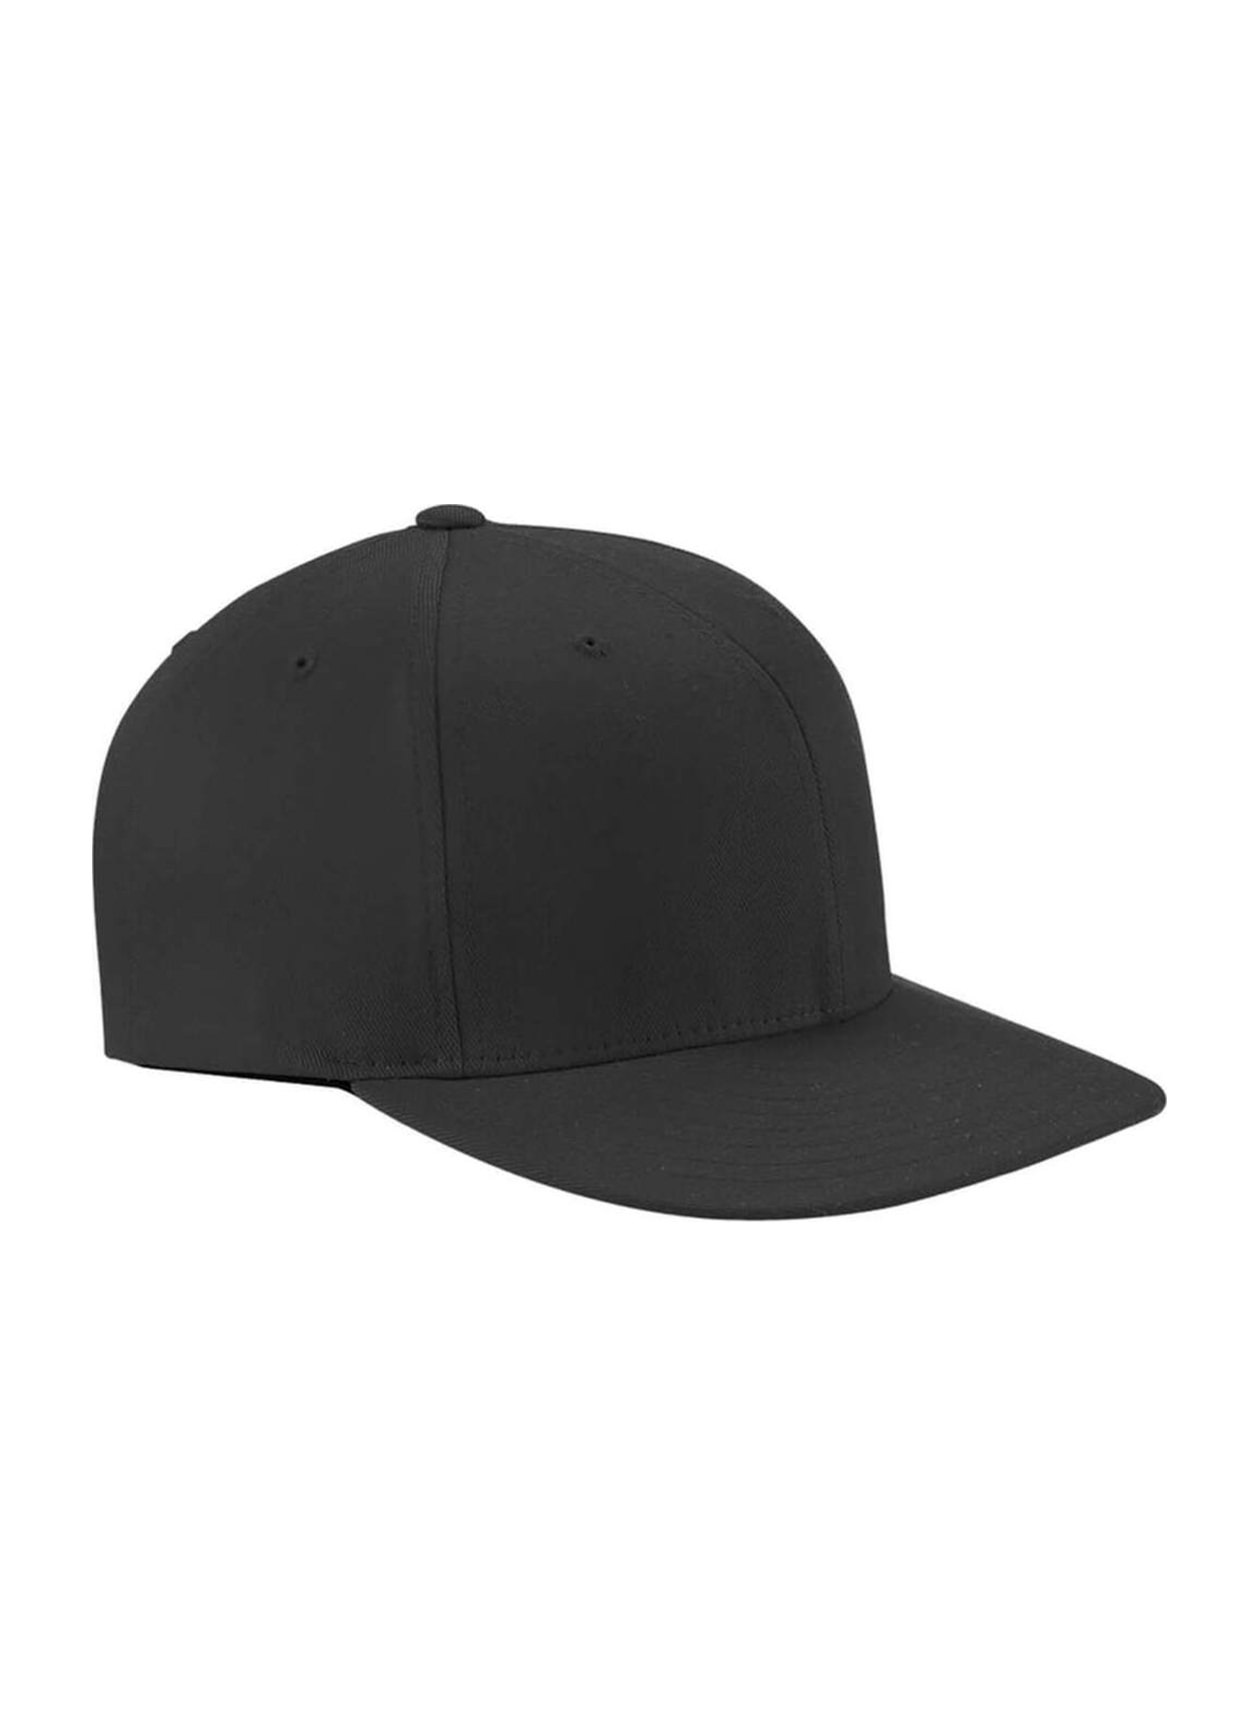 Flexfit Wooly Twill Pro Baseball On-Field Shape Hat with Flat Bill | Flexfit